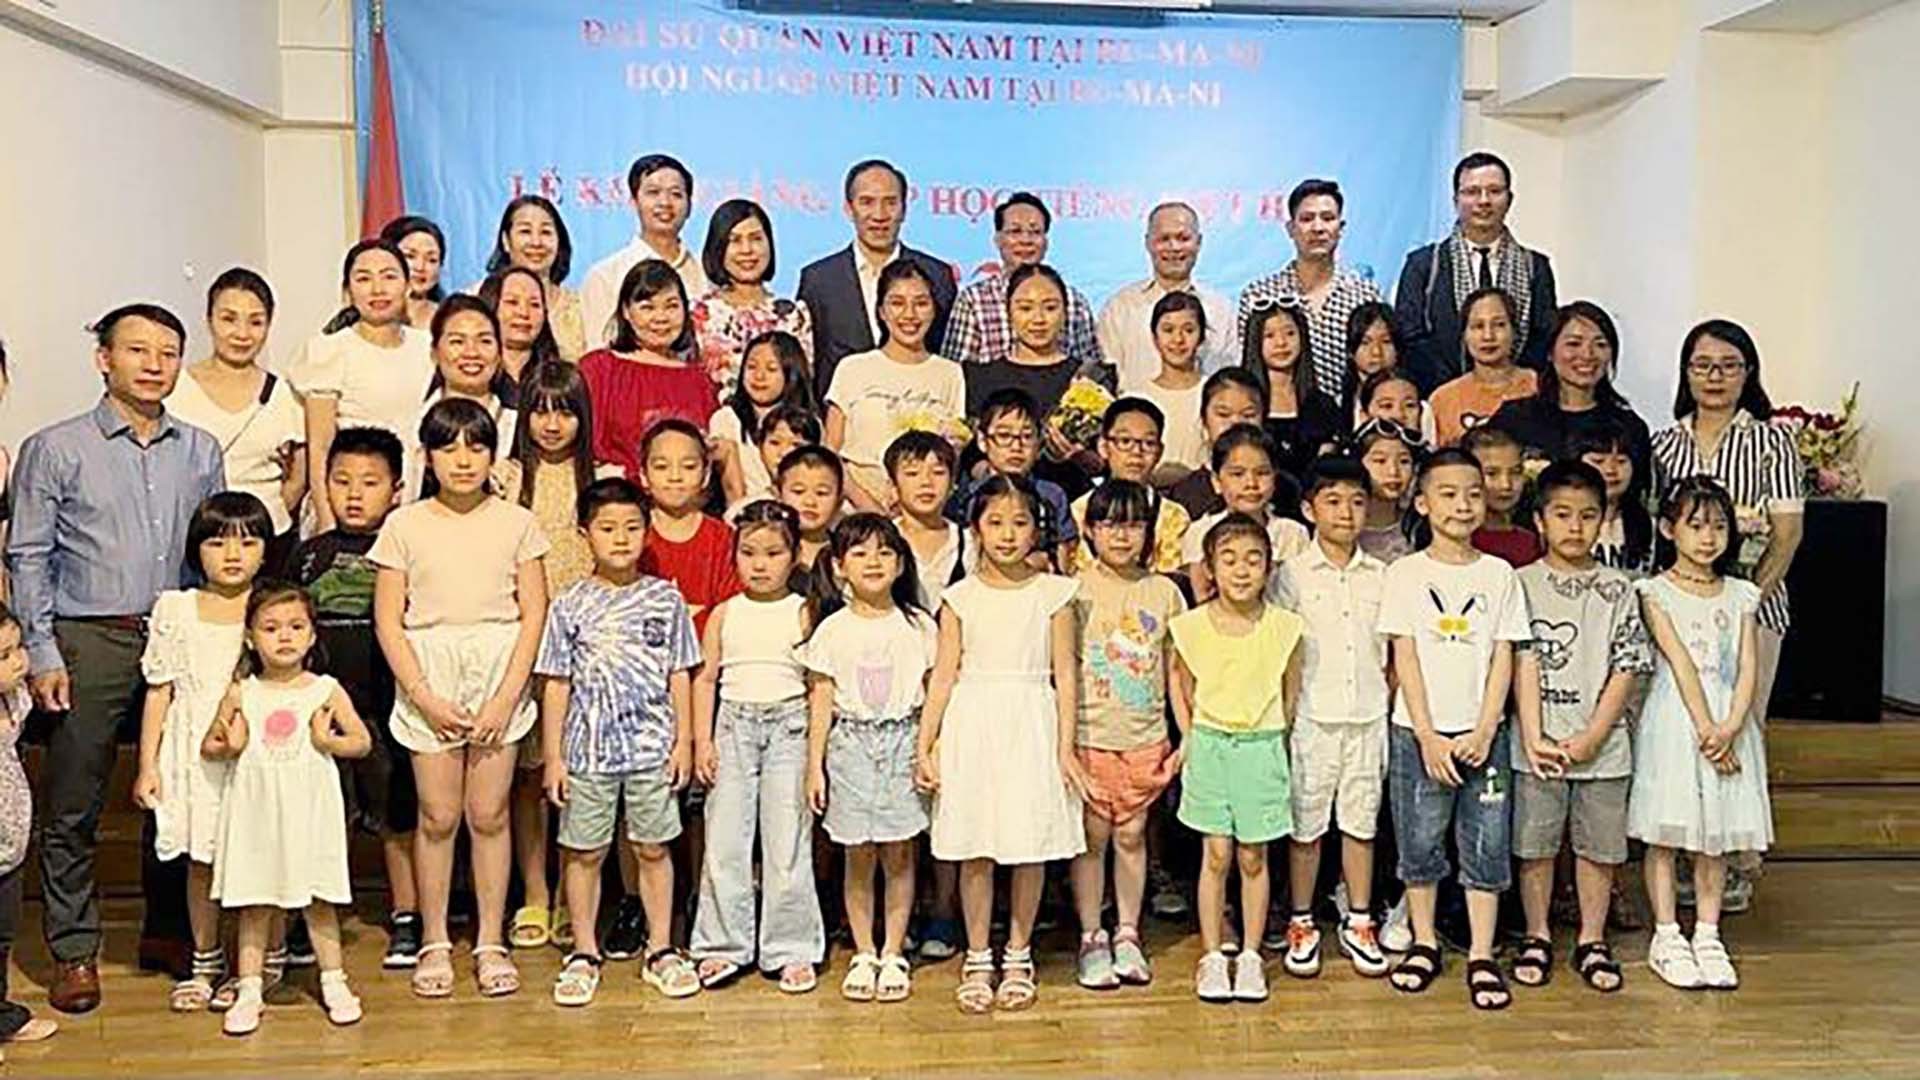 Khai giảng lớp học Hè tiếng Việt năm 2023 tại Romania. (Nguồn: Hội người Việt Nam tại Romania)